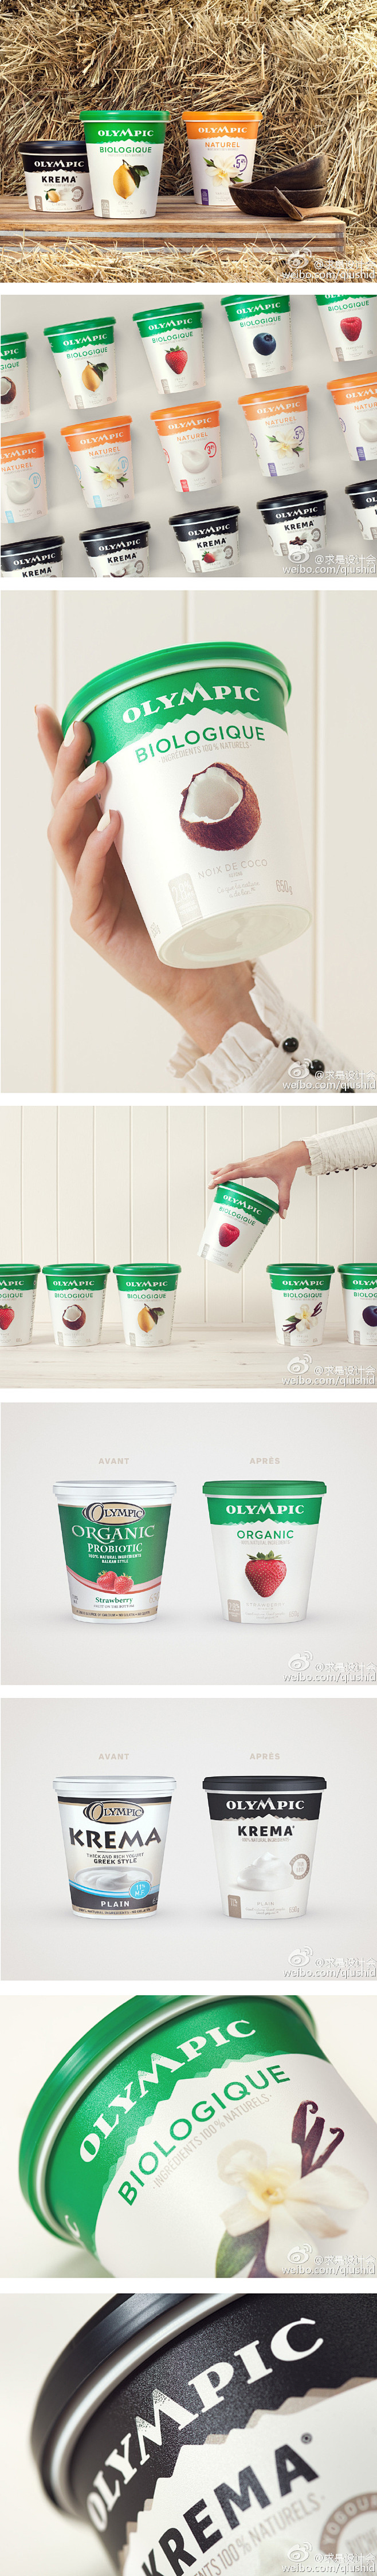 Olympic酸奶的包装设计